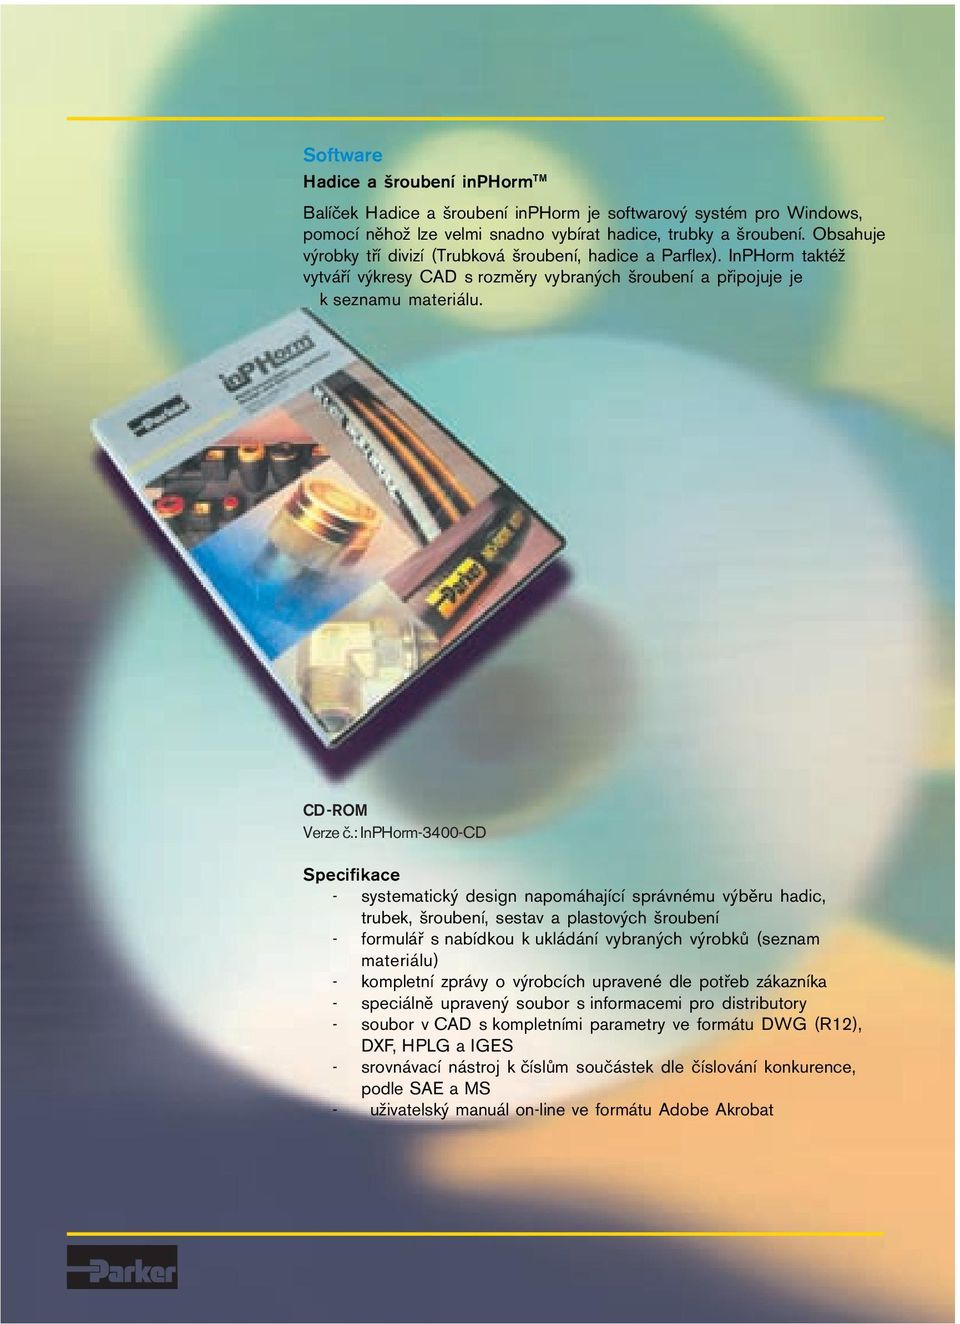 : InPHorm-3400-CD Specifikace - systematický design napomáhající správnému výběru hadic, trubek, šroubení, sestav a plastových šroubení - formulář s nabídkou k ukládání vybraných výrobků (seznam